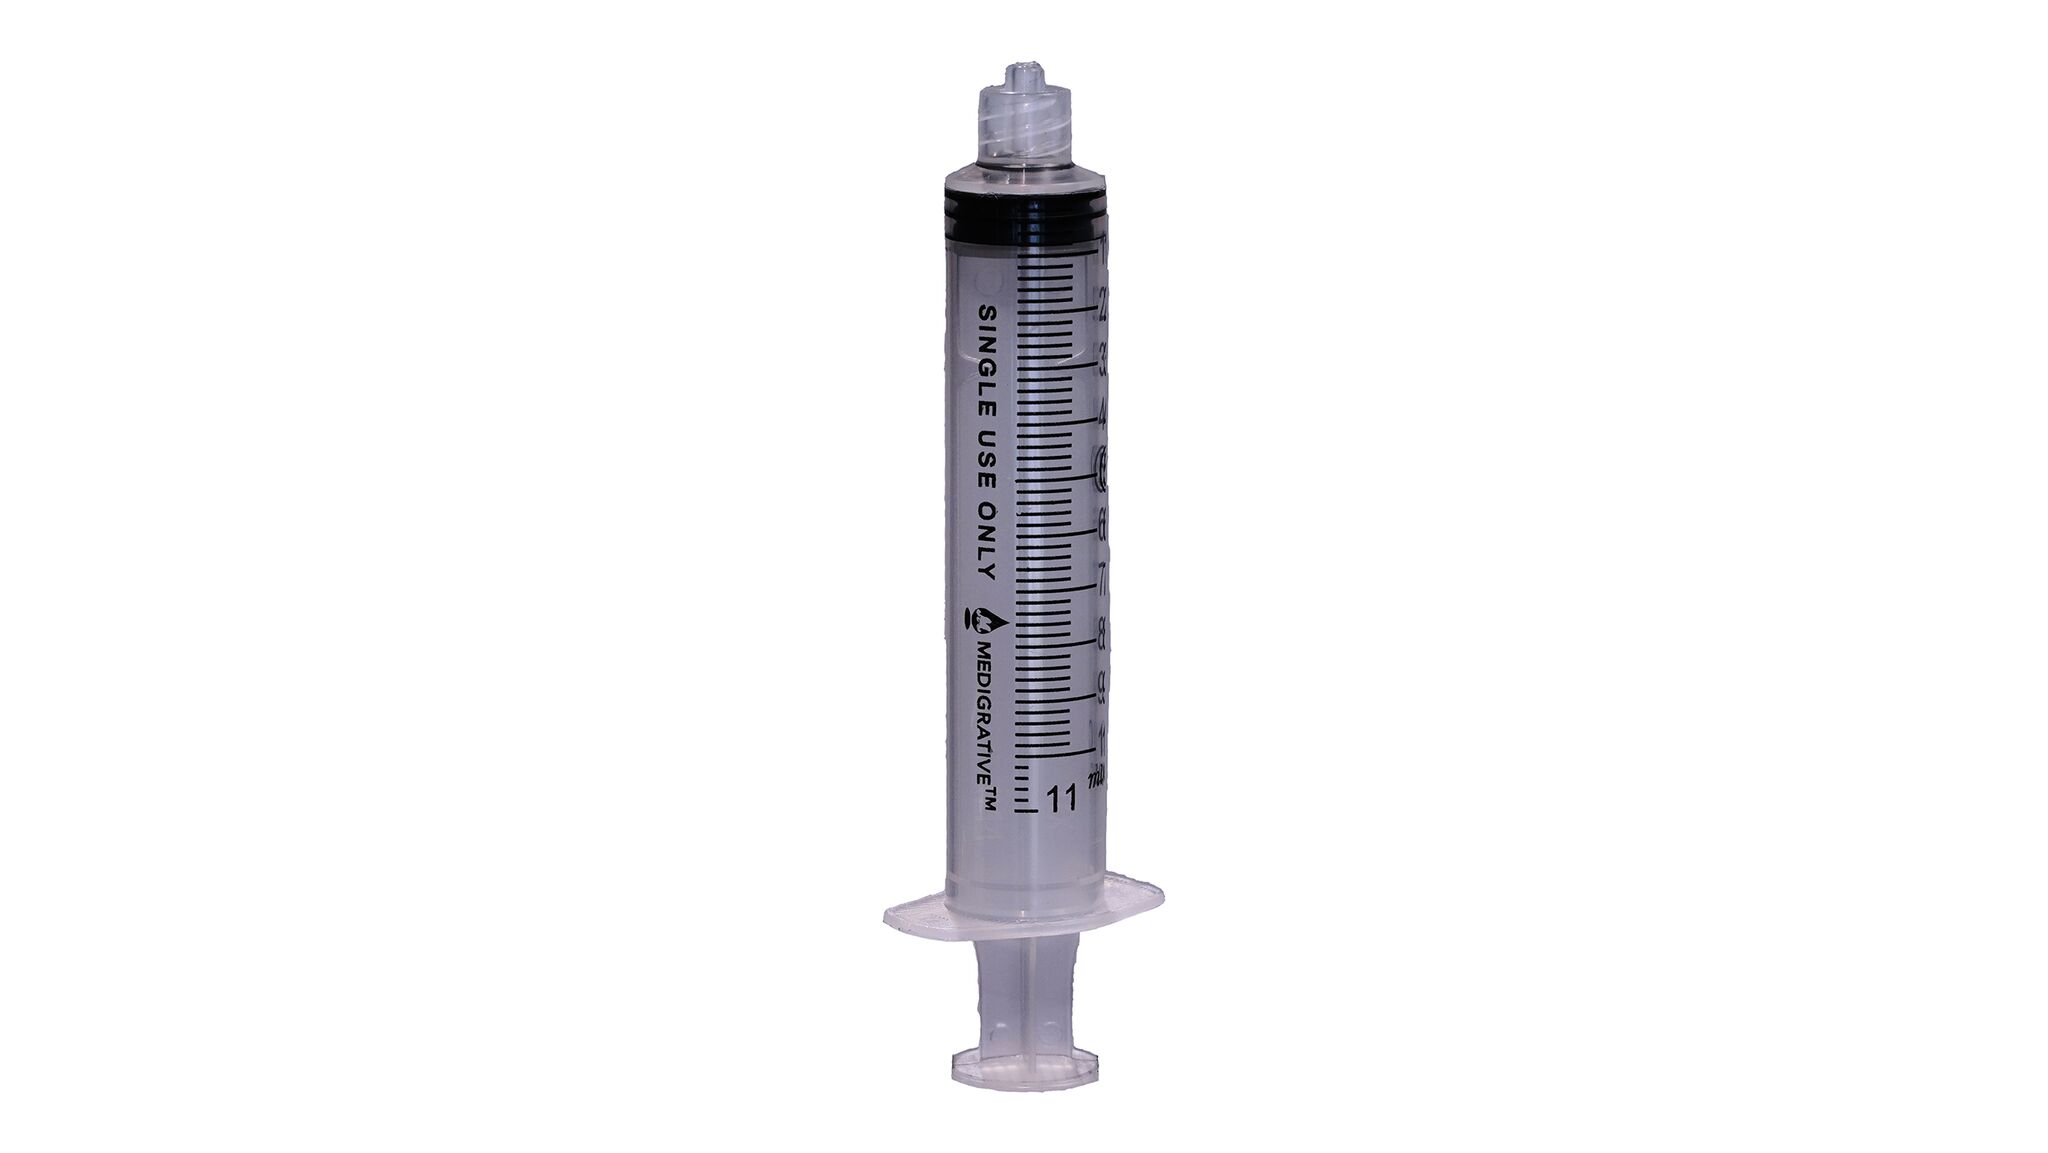 10mL Blister Pack Luer Lock Tip (10cc Syringe) 100/Box CASE 8 x 100 # Medigrative #MERIT10S